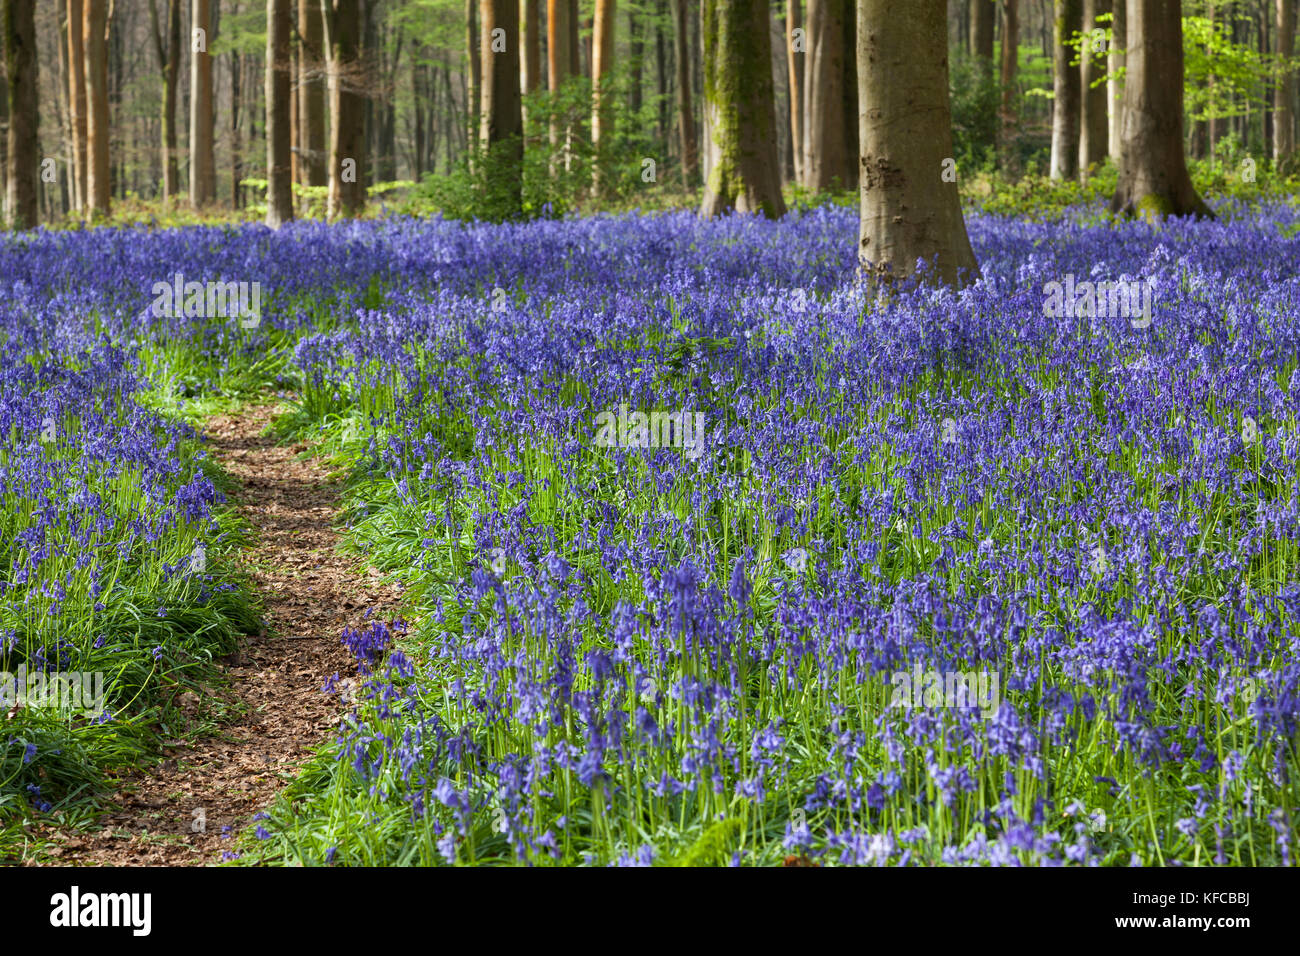 Chemin à travers les cloches (jacinthoides non-scripta) floraison au printemps à West Woods, Lockeridge, Wiltshire, Angleterre, Royaume-Uni Banque D'Images